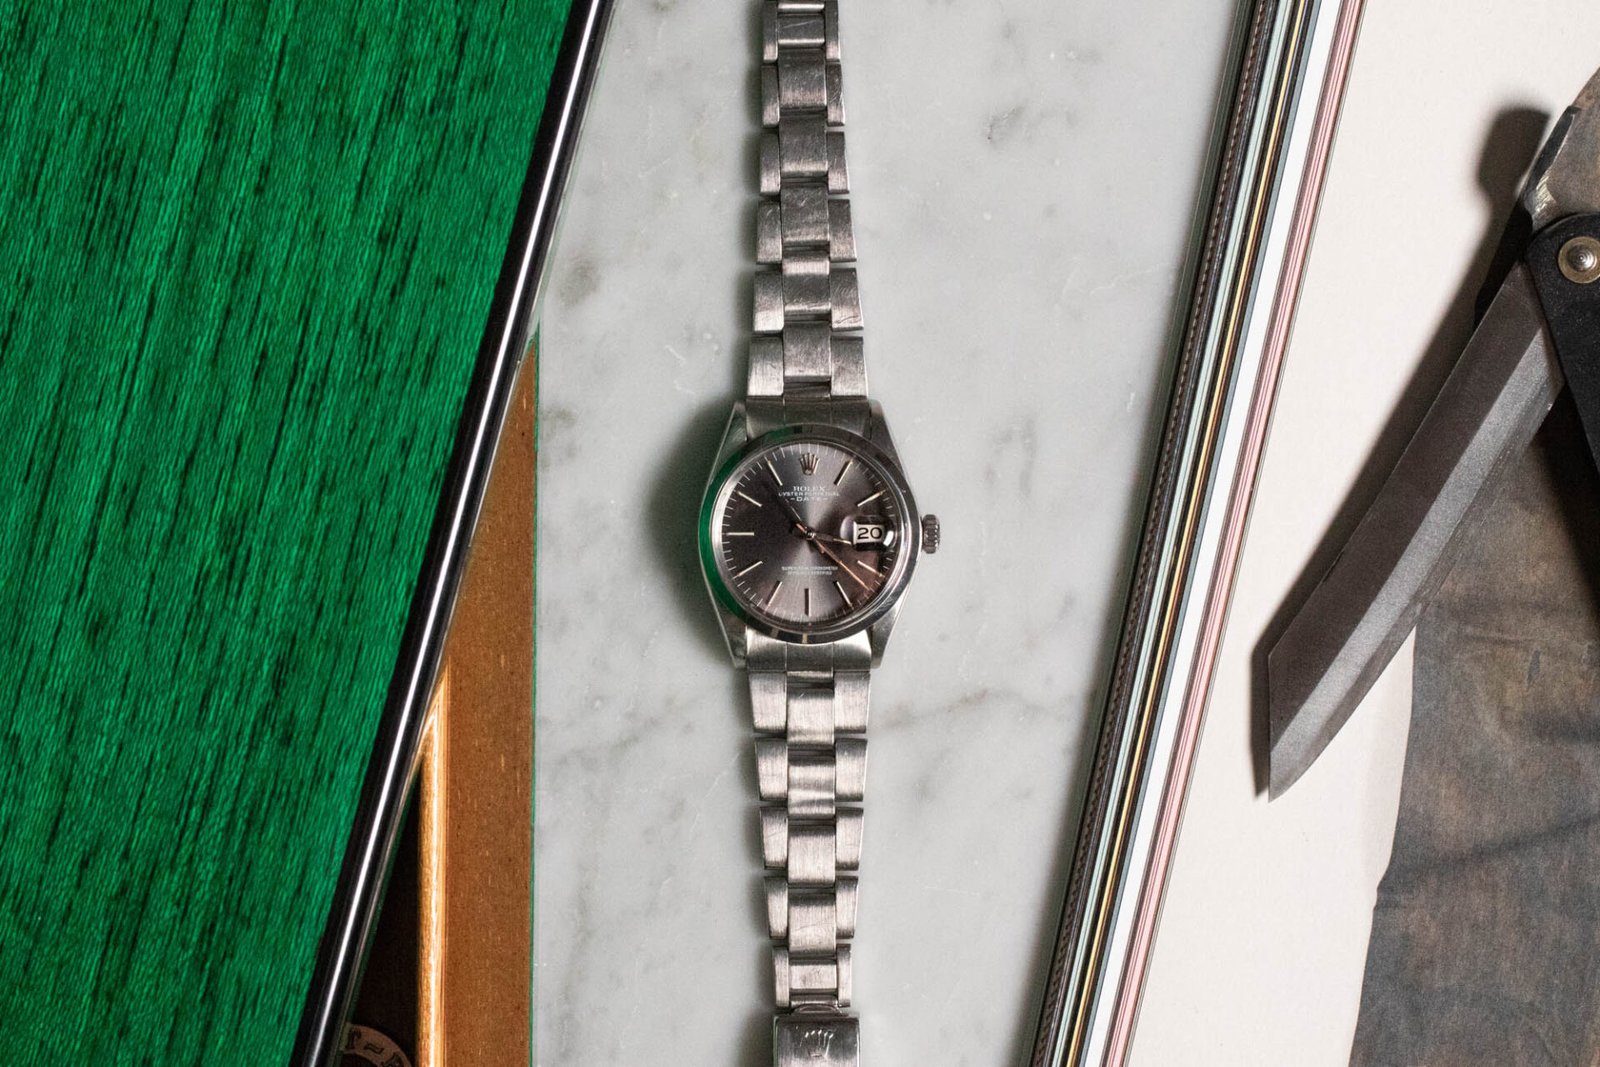 Rolex Date 1500 - Selection of vintage watches Joseph Bonnie